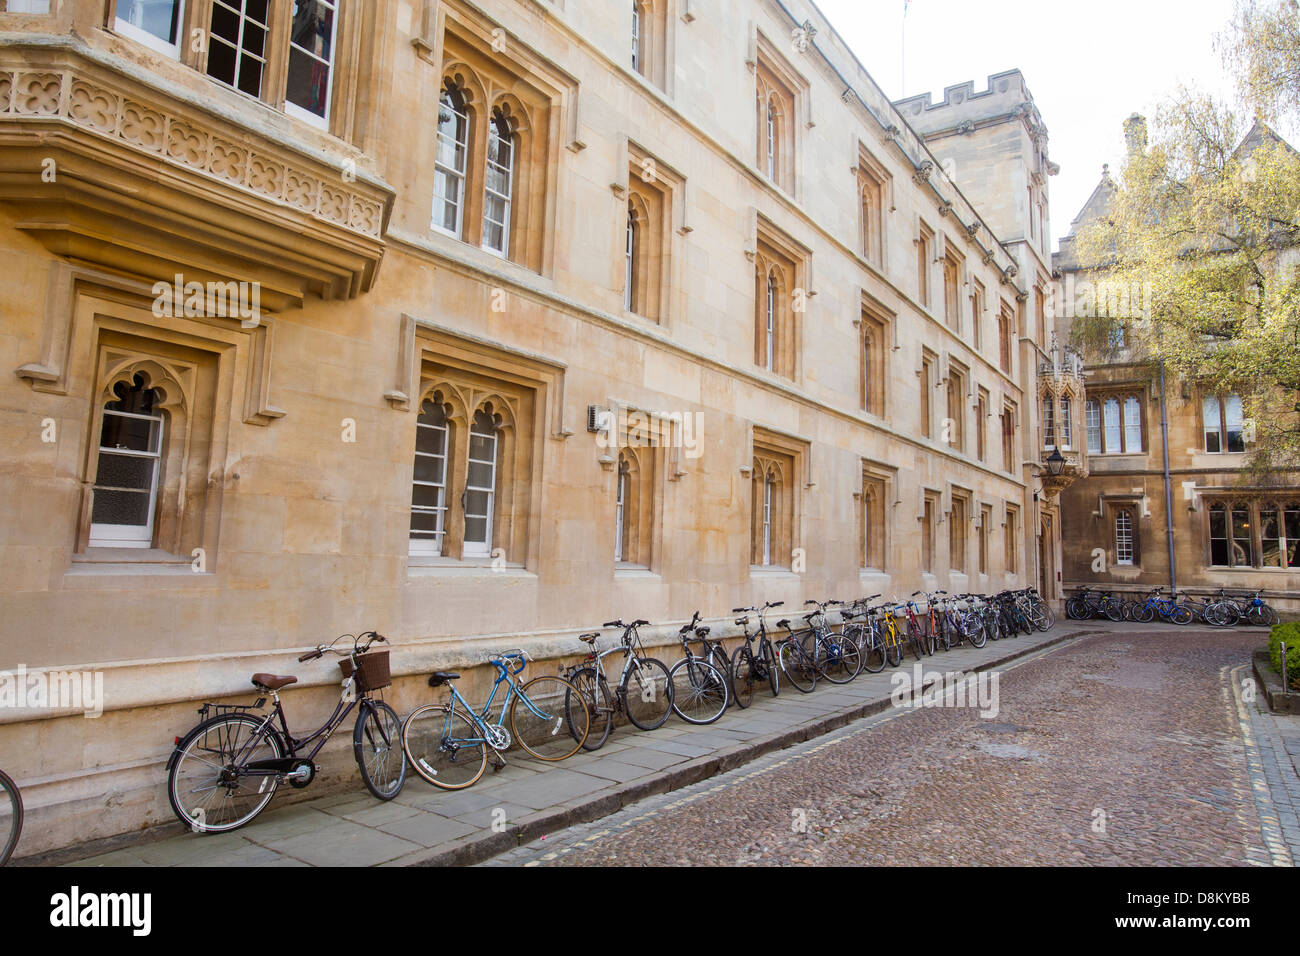 Pembroke College in Oxford, UK Stock Photo